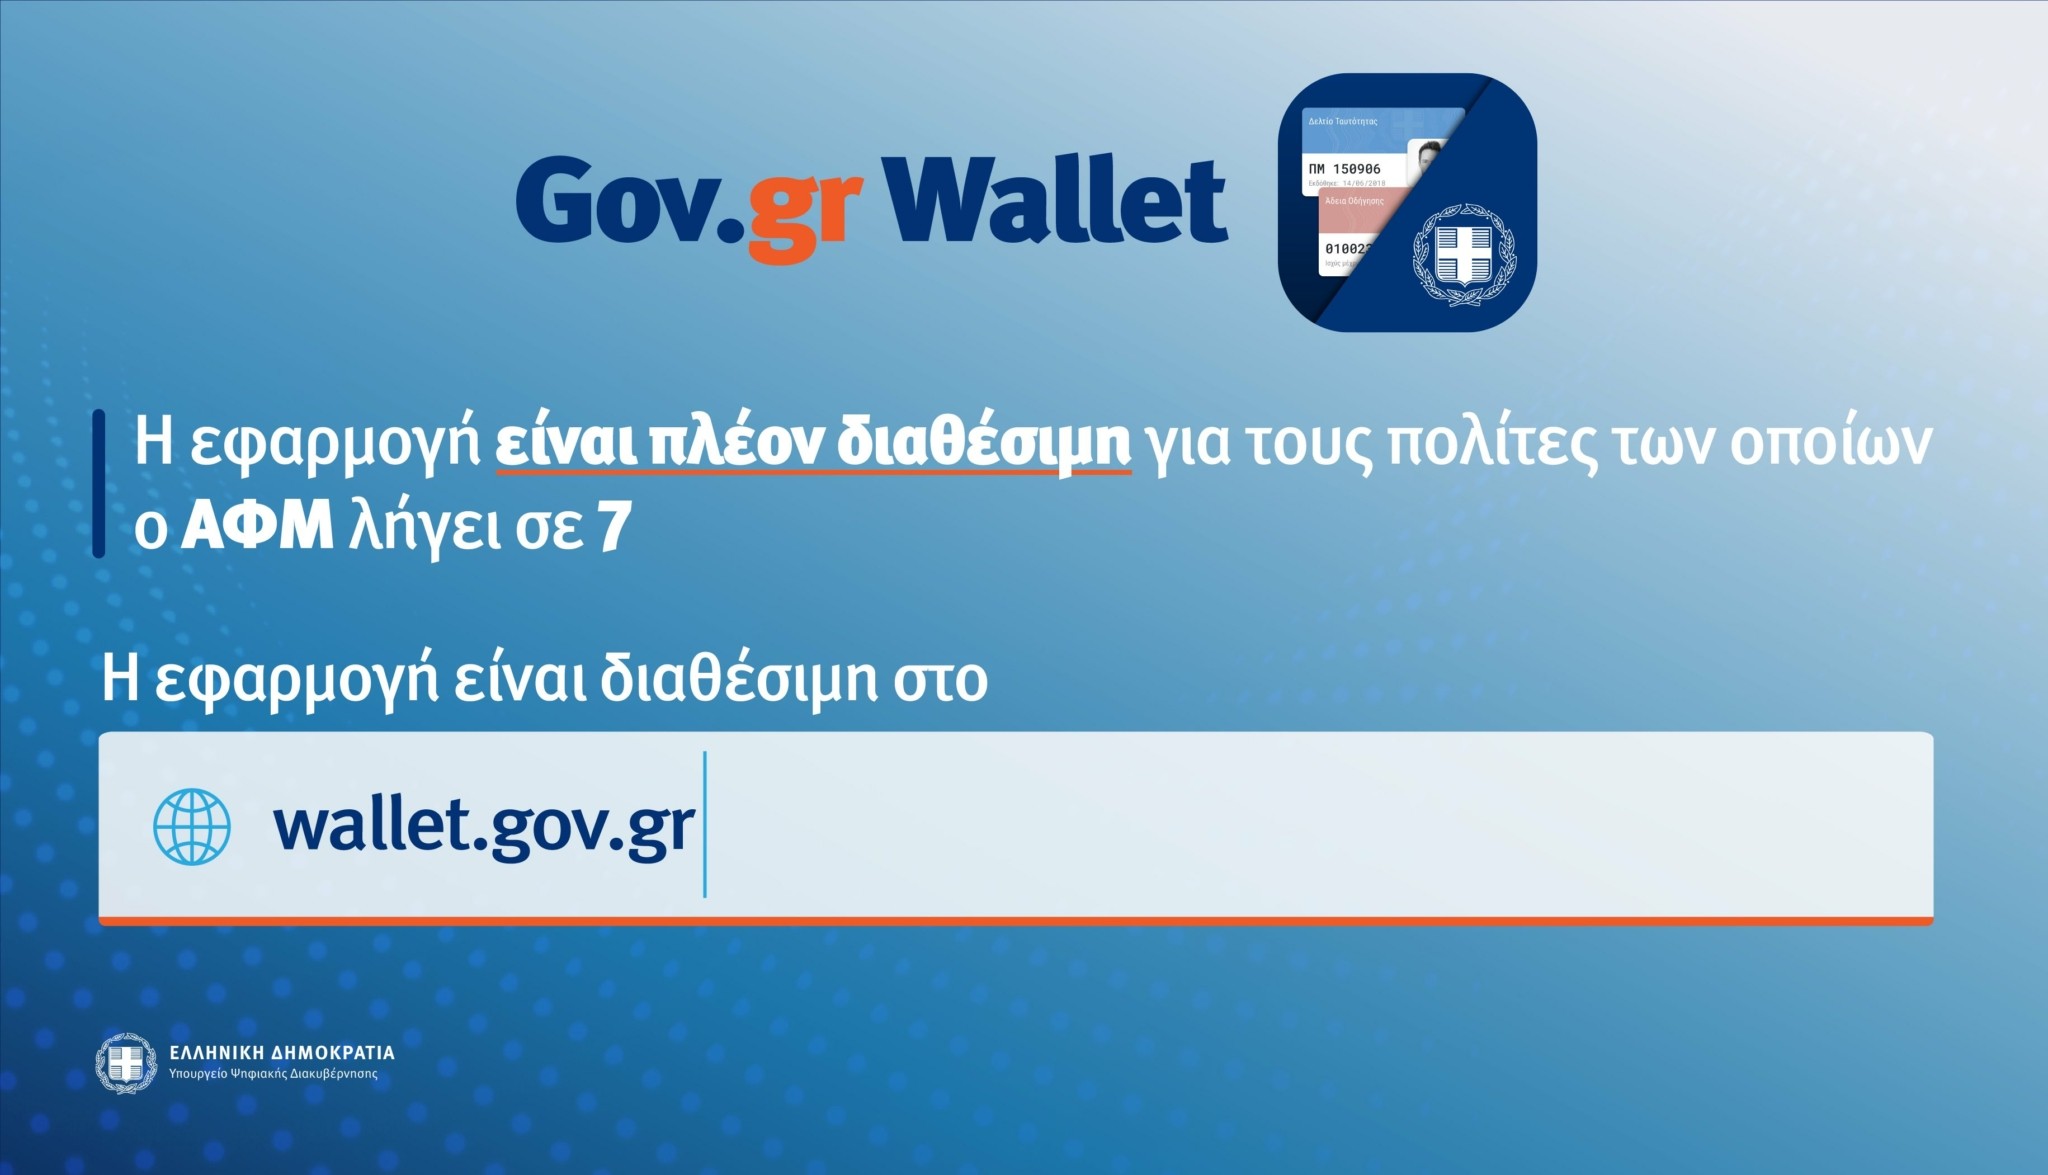 Wallet.gov